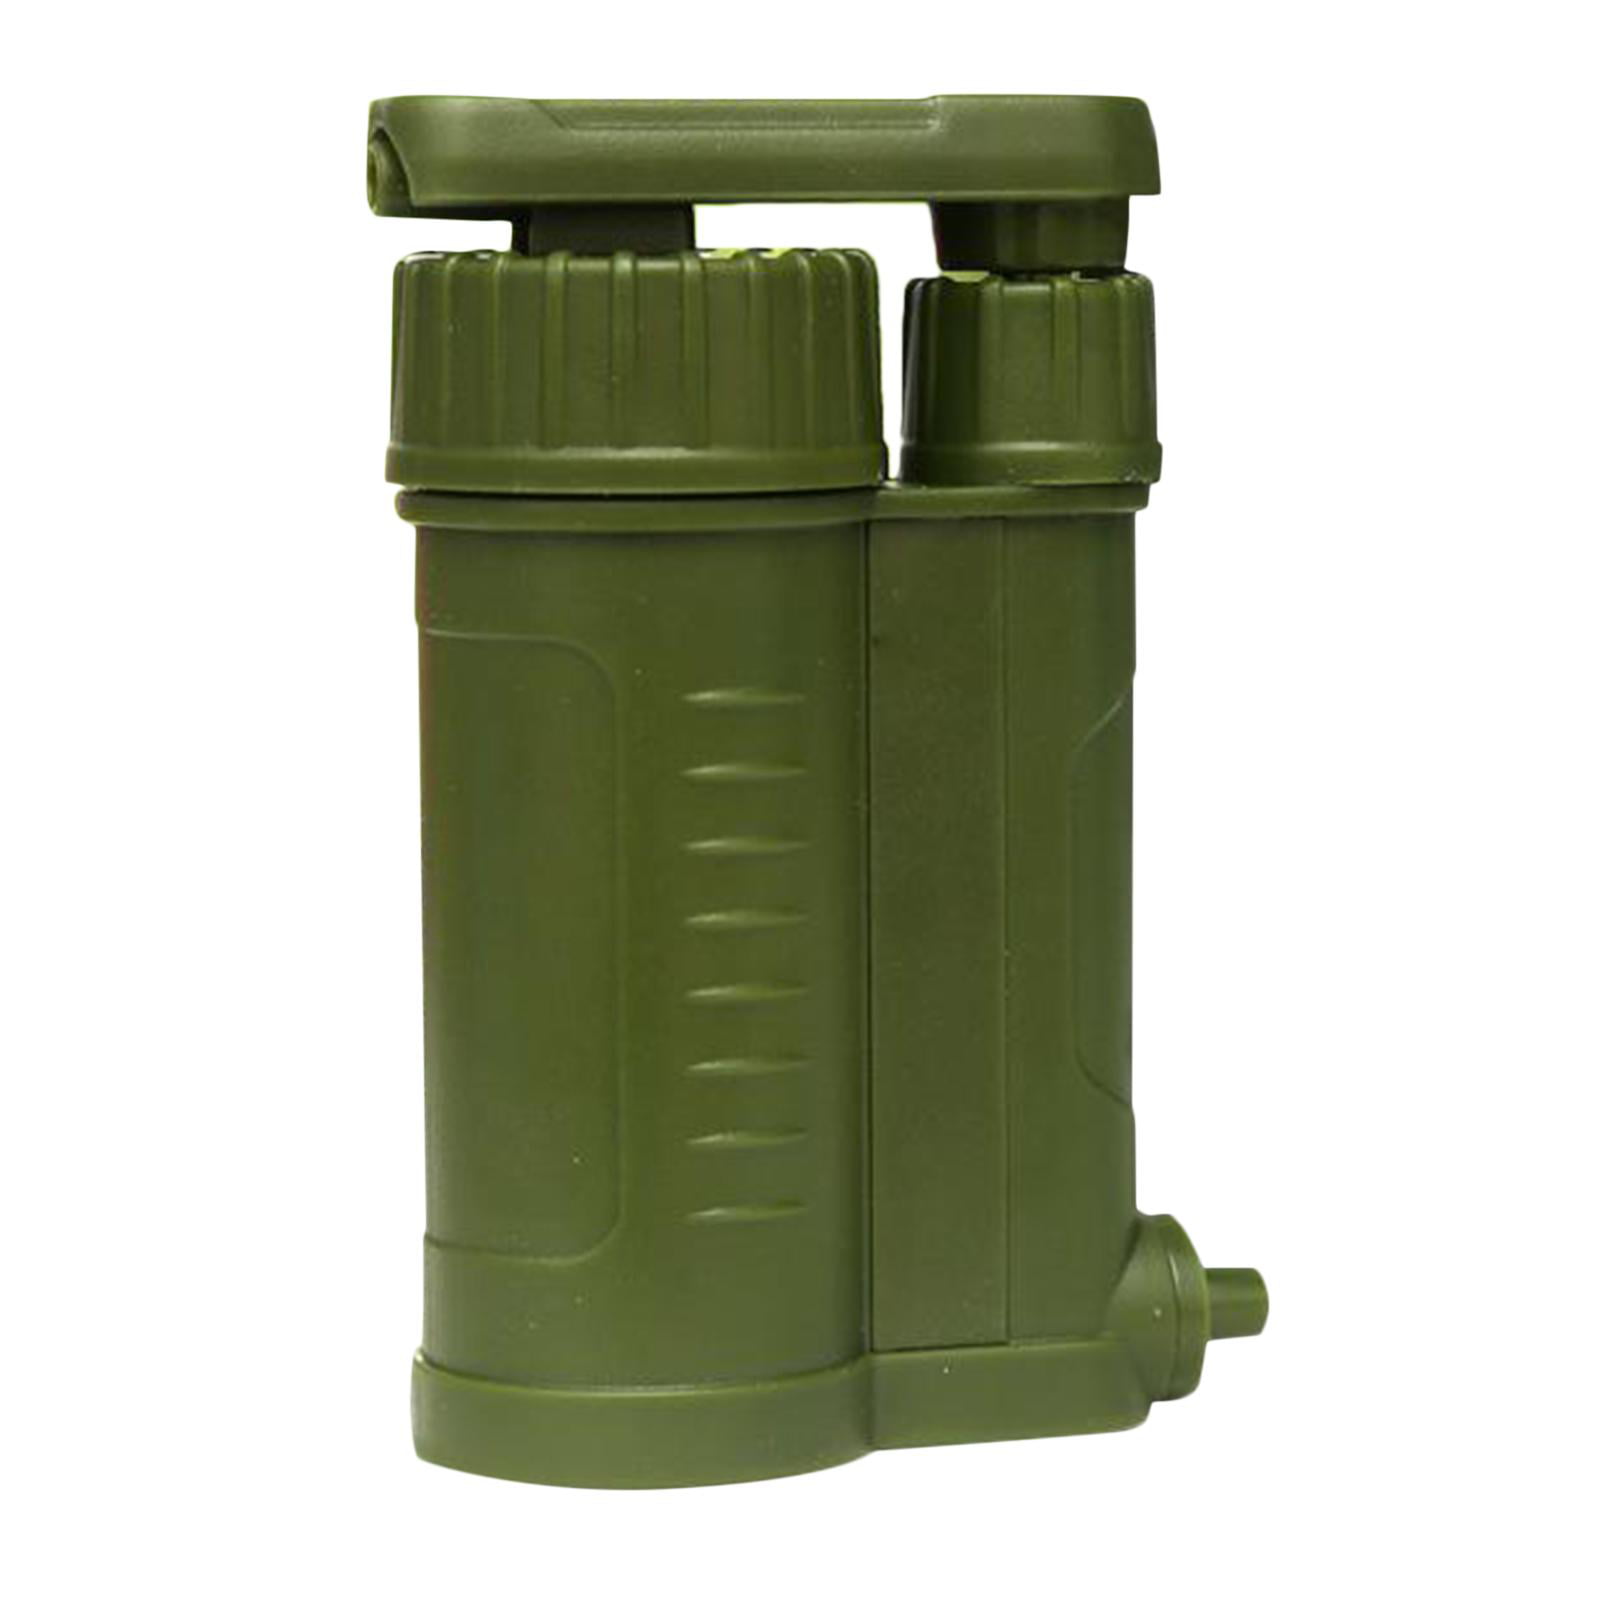 Outdoor Notfall Wasserfilter Pumpe Purifier Travel Camping Survival Tragbar 